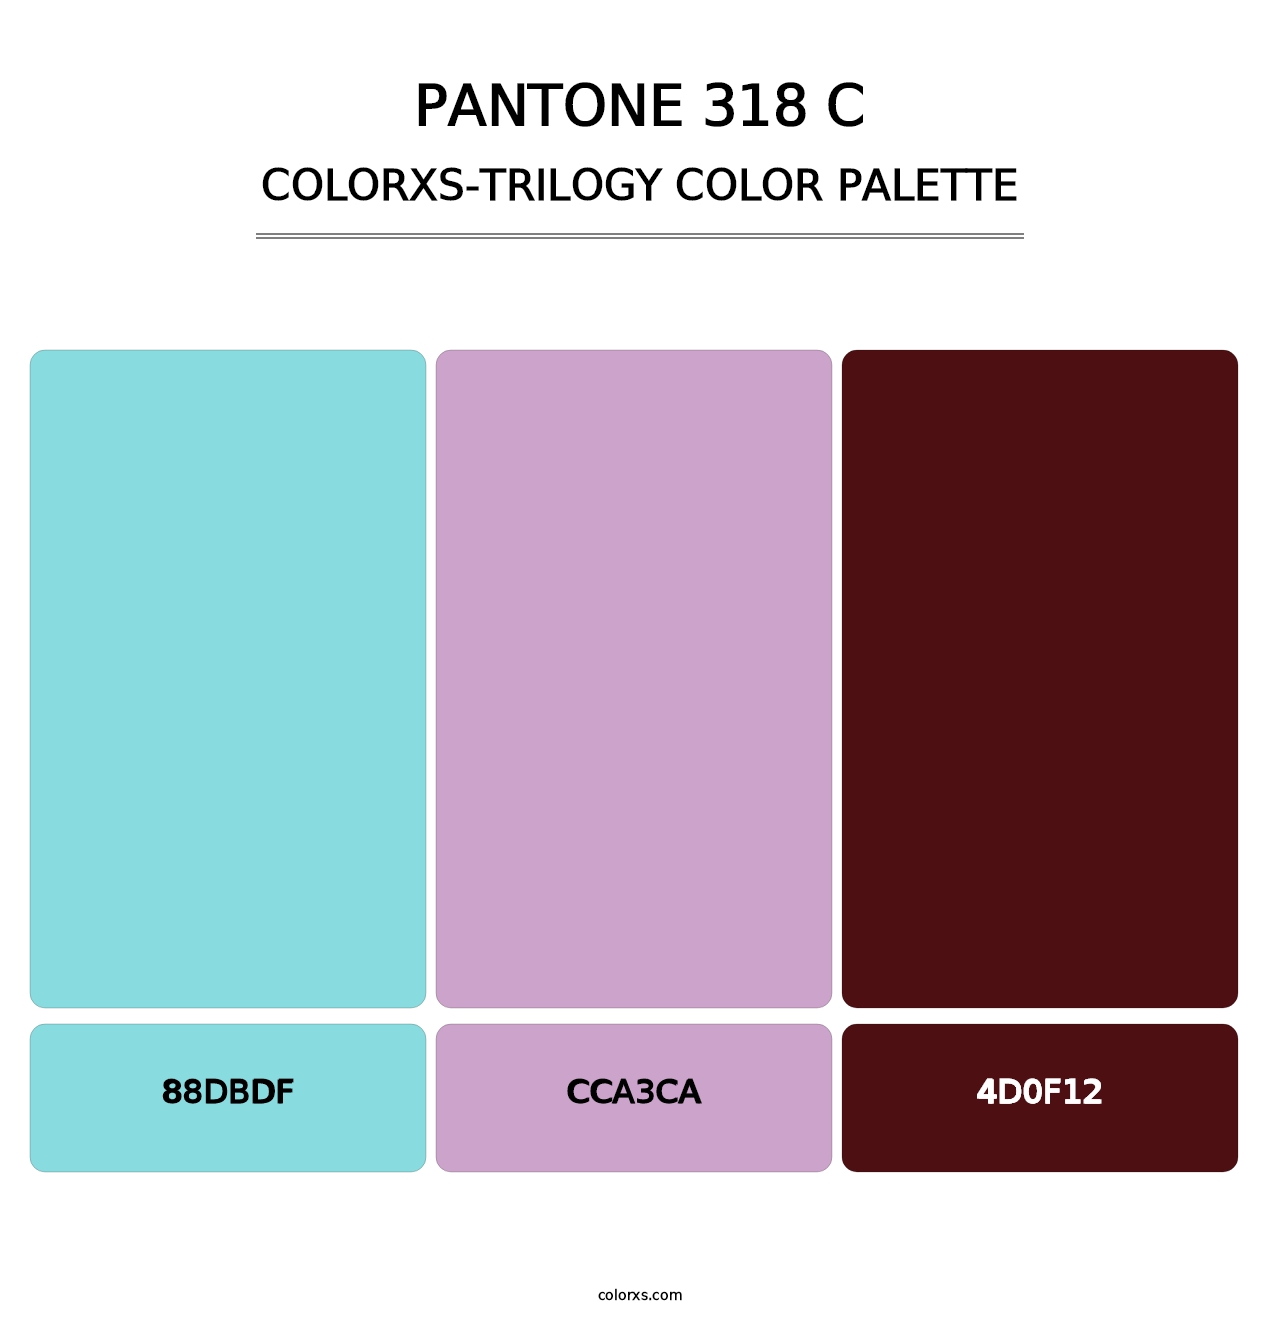 PANTONE 318 C - Colorxs Trilogy Palette